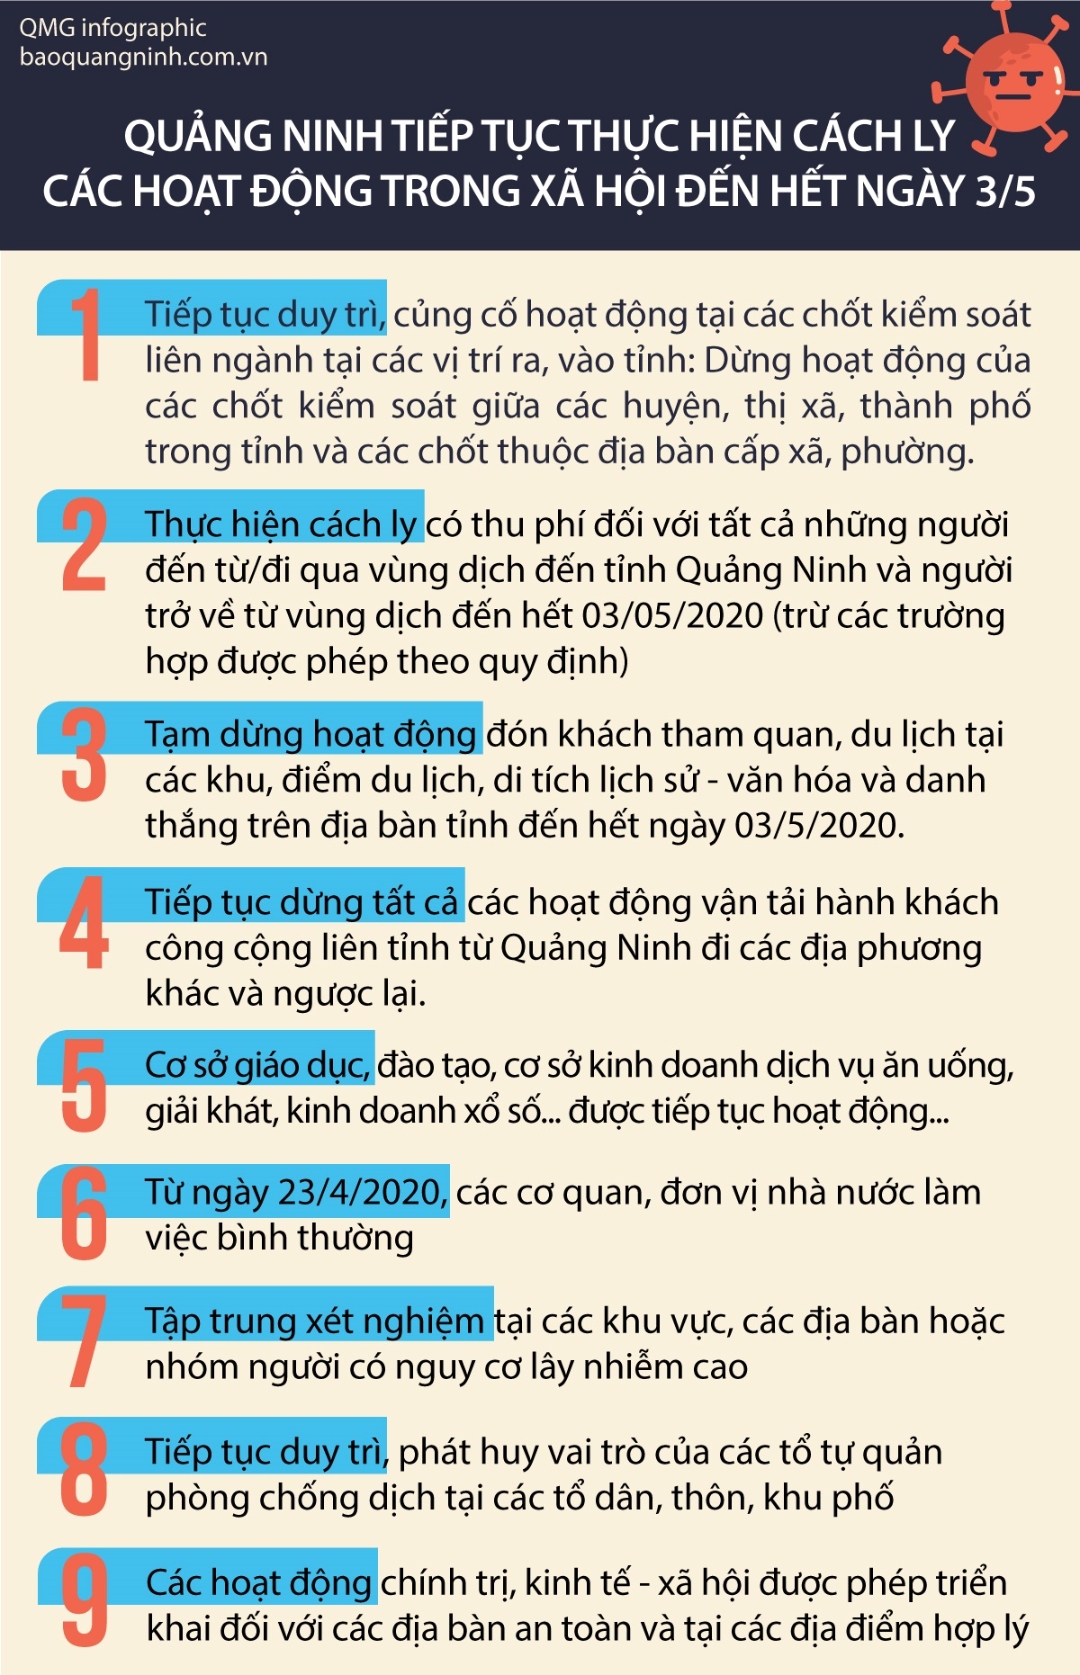 Quảng Ninh tiếp tục thực hiện cách ly các hoạt động trong xã hội đến hết ngày 3/5